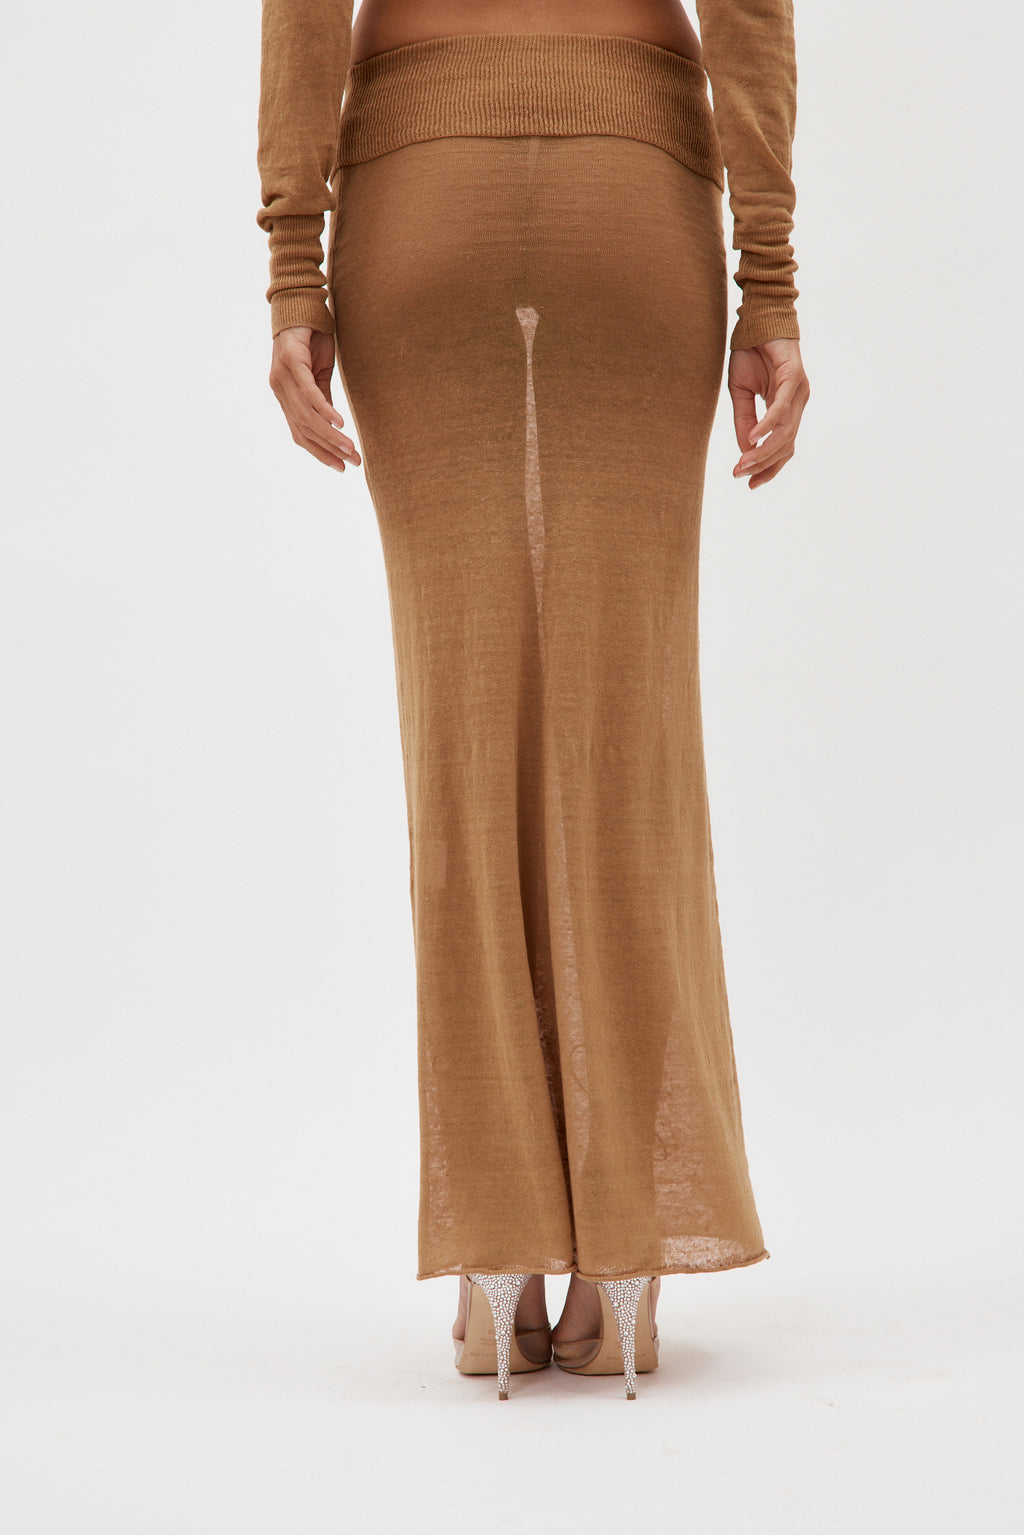 Lyca Camel Skirt